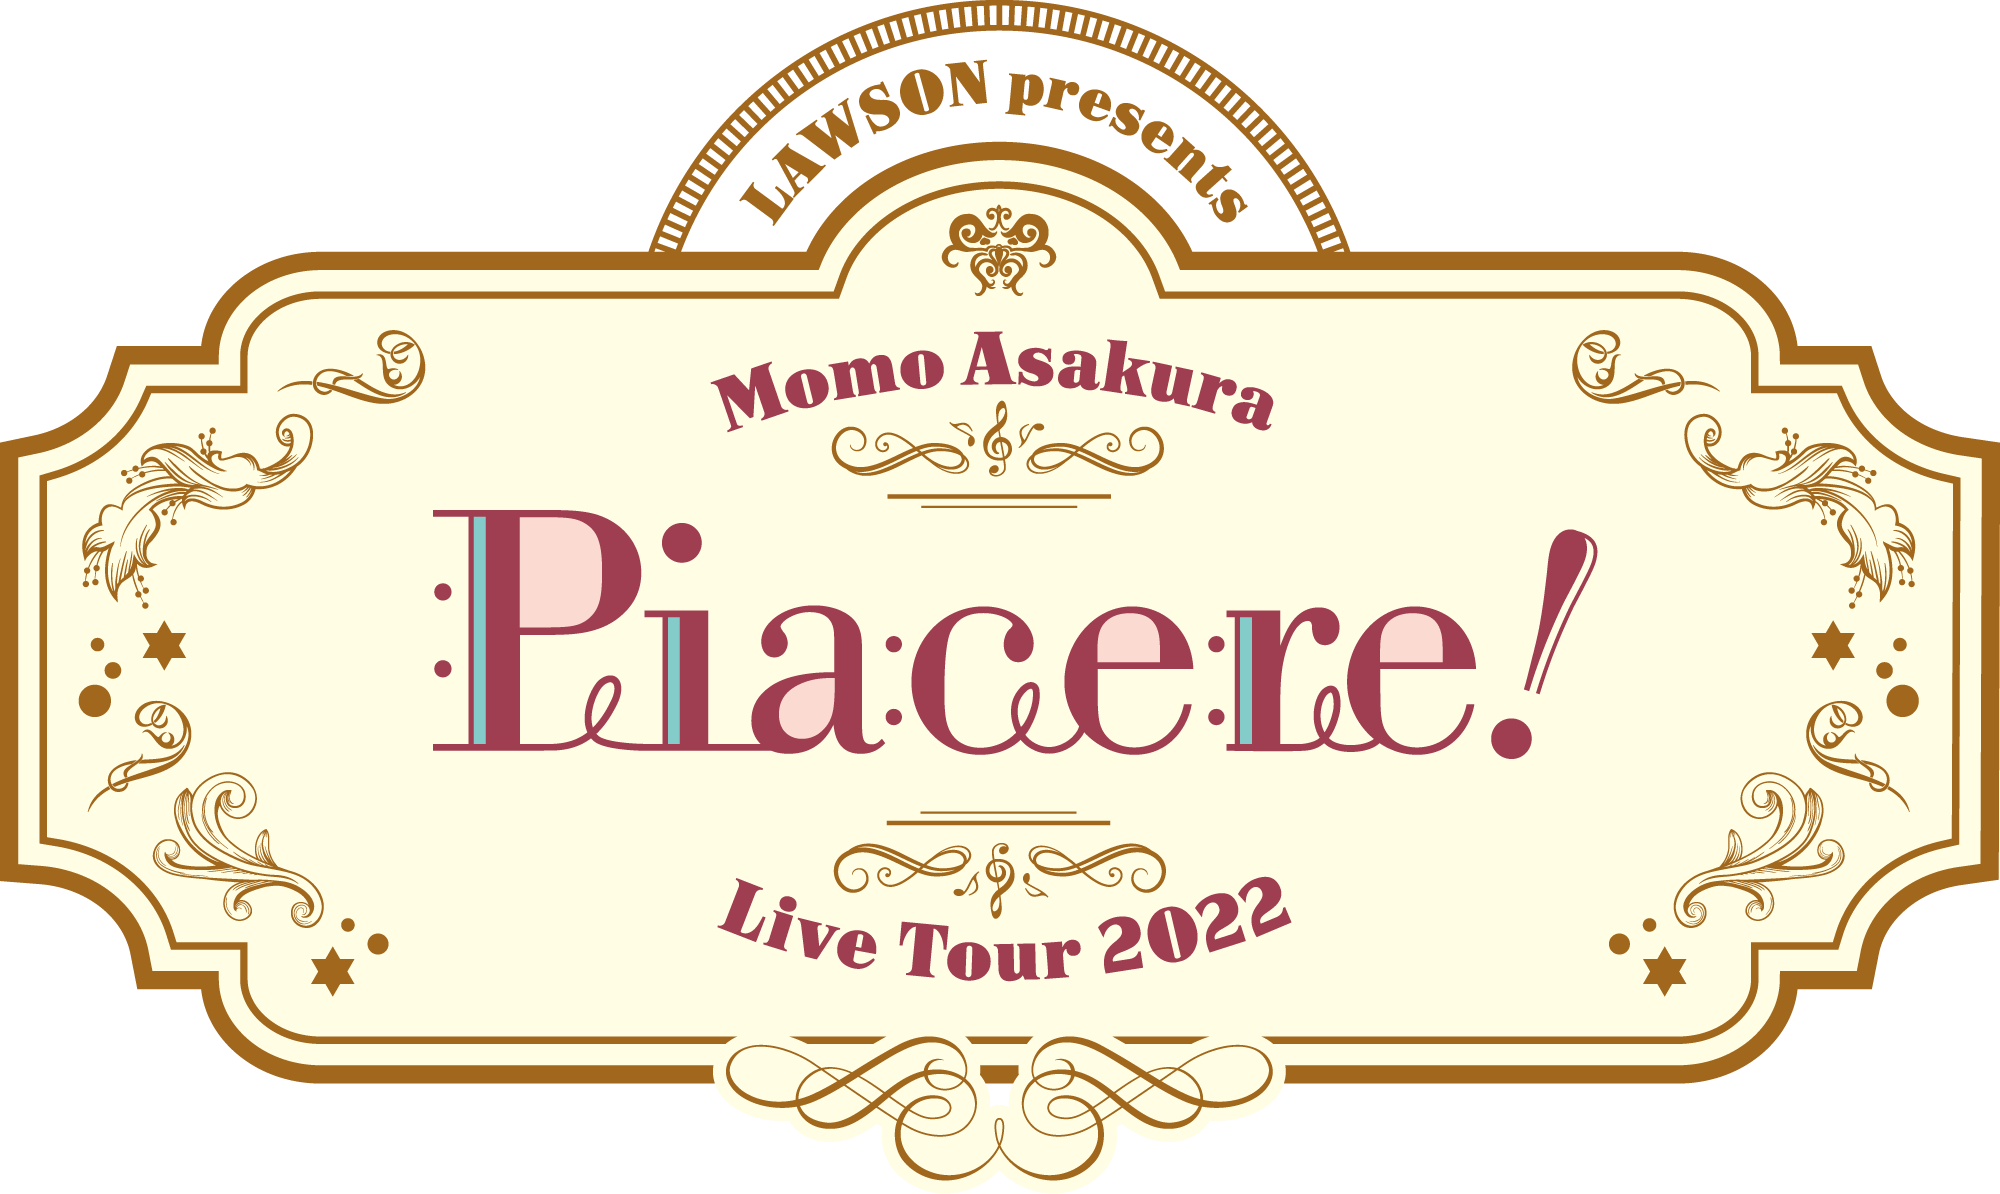 Lawson Presents 麻倉もも Live Tour 22 Piacere 追加公演 プレイガイド先行のお知らせ Trysail Portal Square トライセイルポータルスクエア